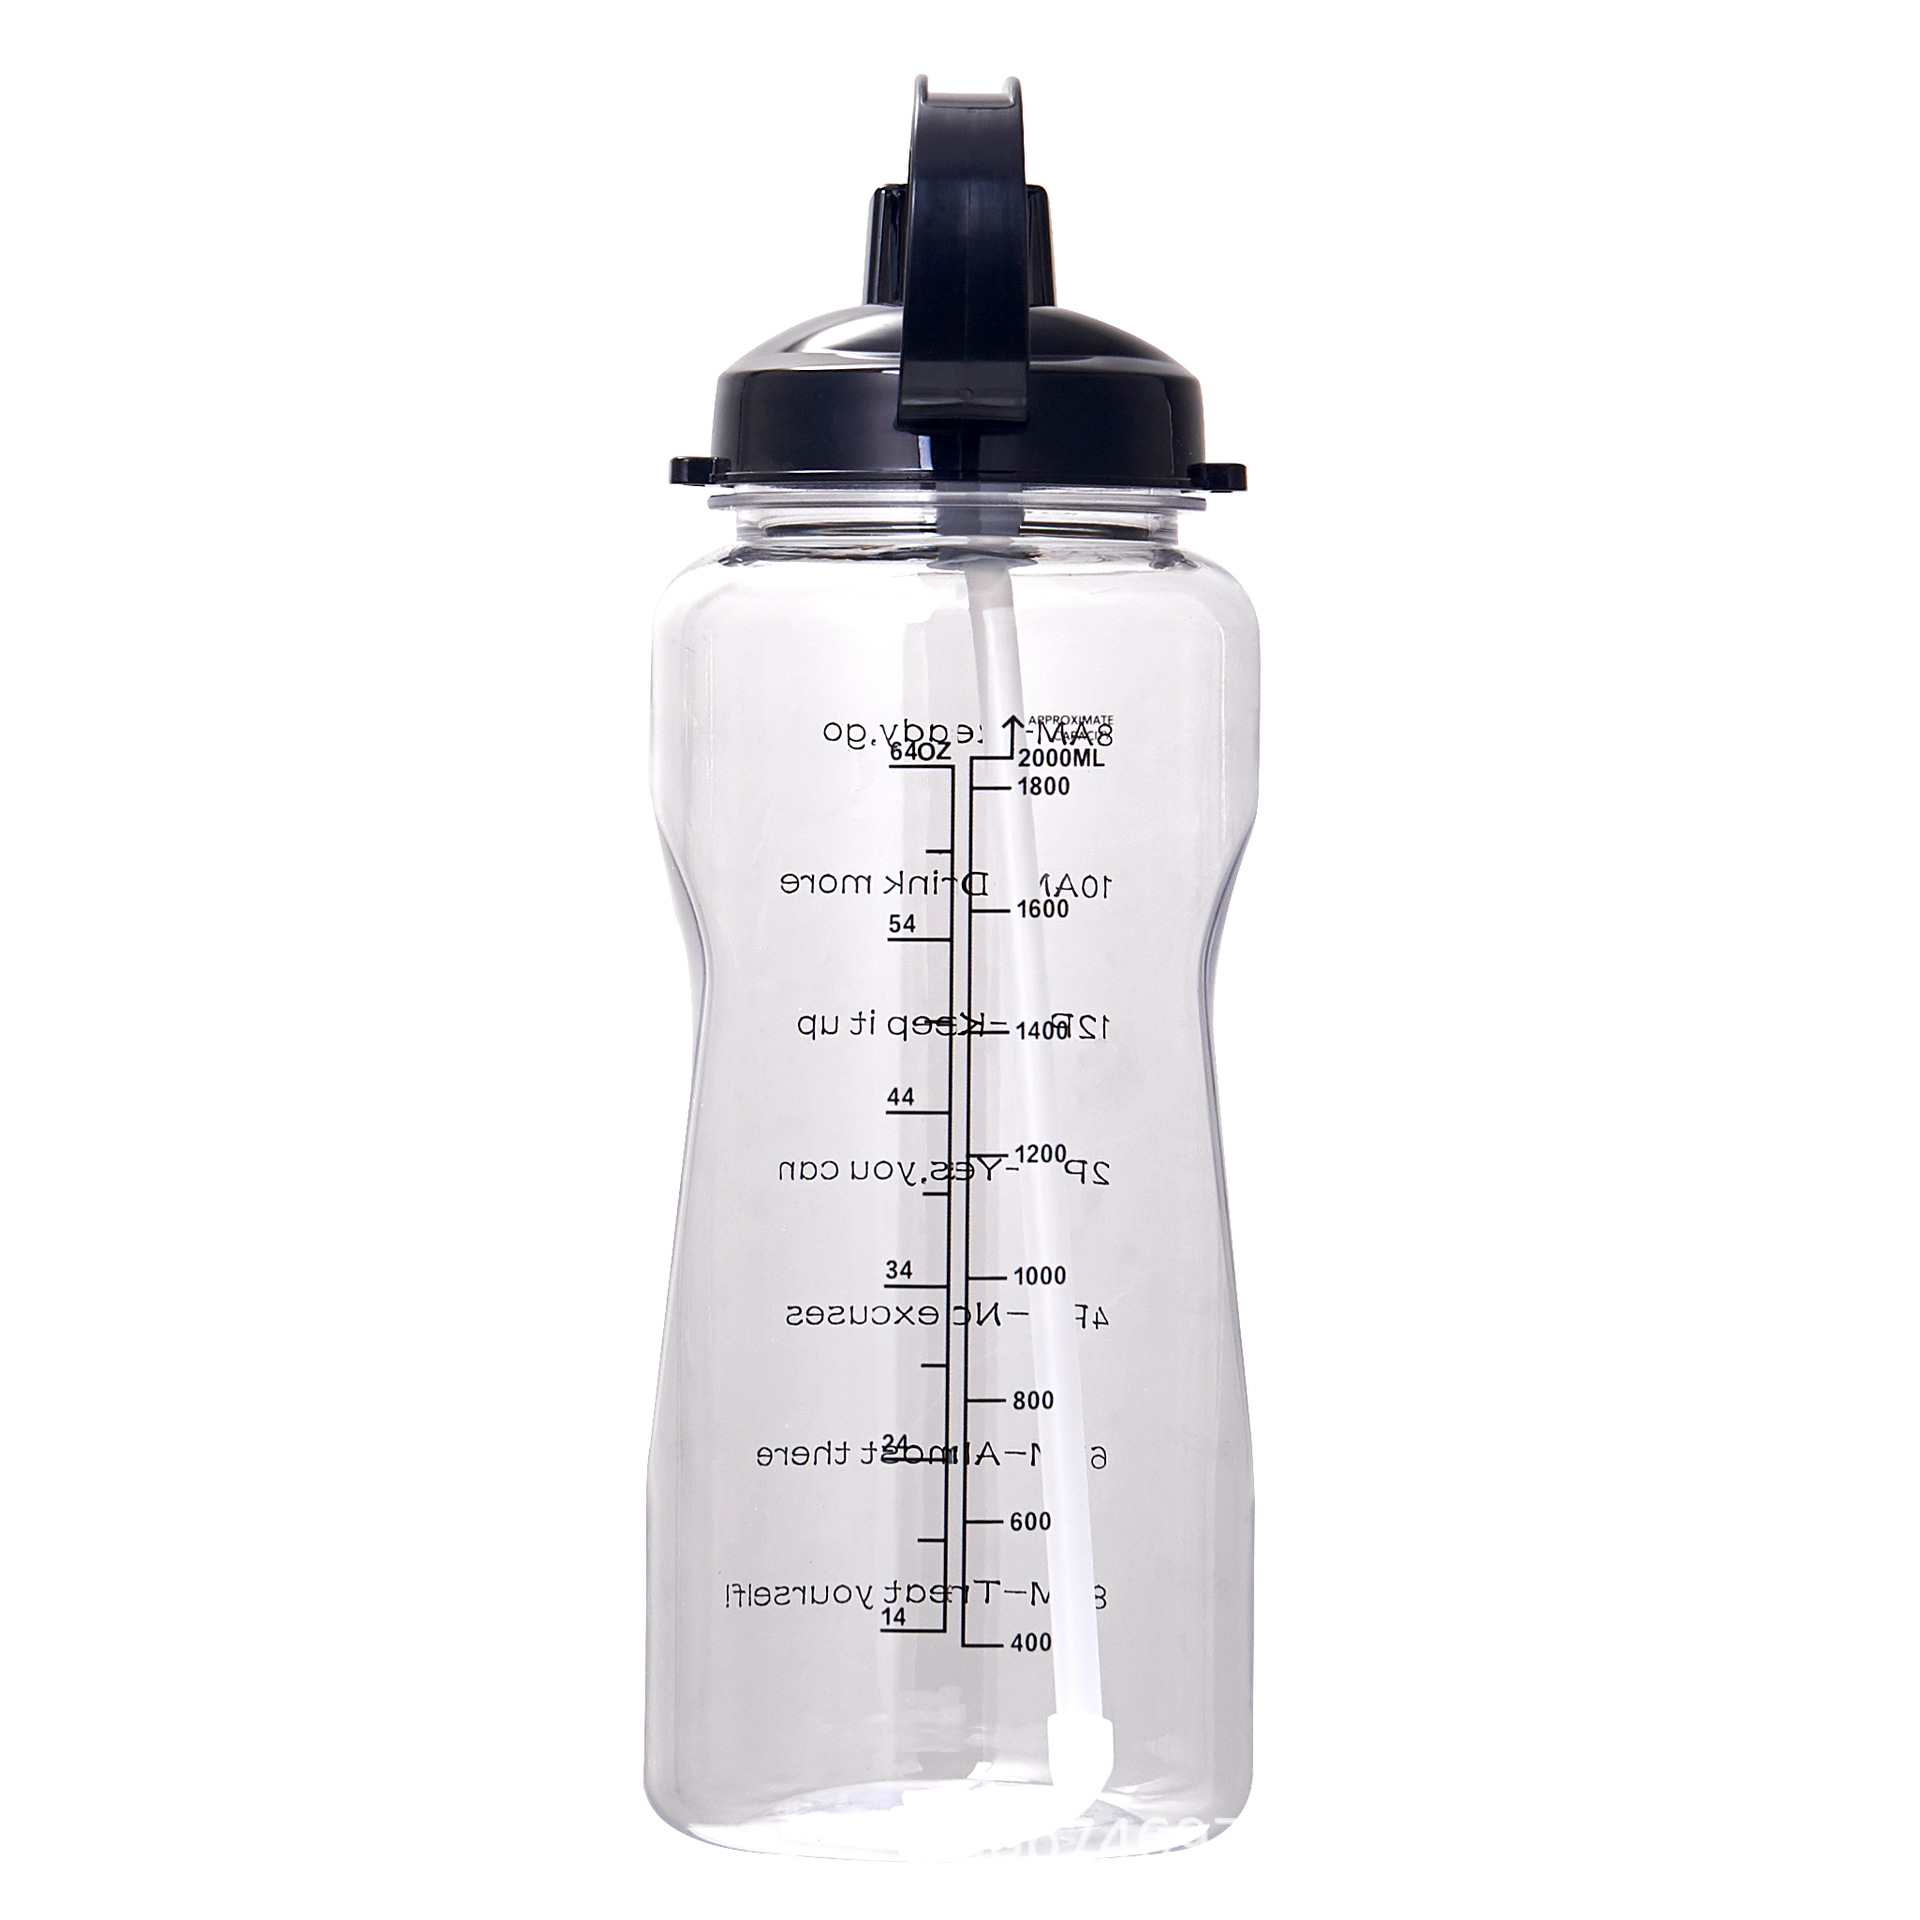 ขวดน้ำ ขวดกีฬา 2 ลิตร เก็บความเย็น พลาสติก สไตล์สปอร์ต ปราศจาก BPA สำหรับพกเล่นกีฬาและการออกกำลังกาย